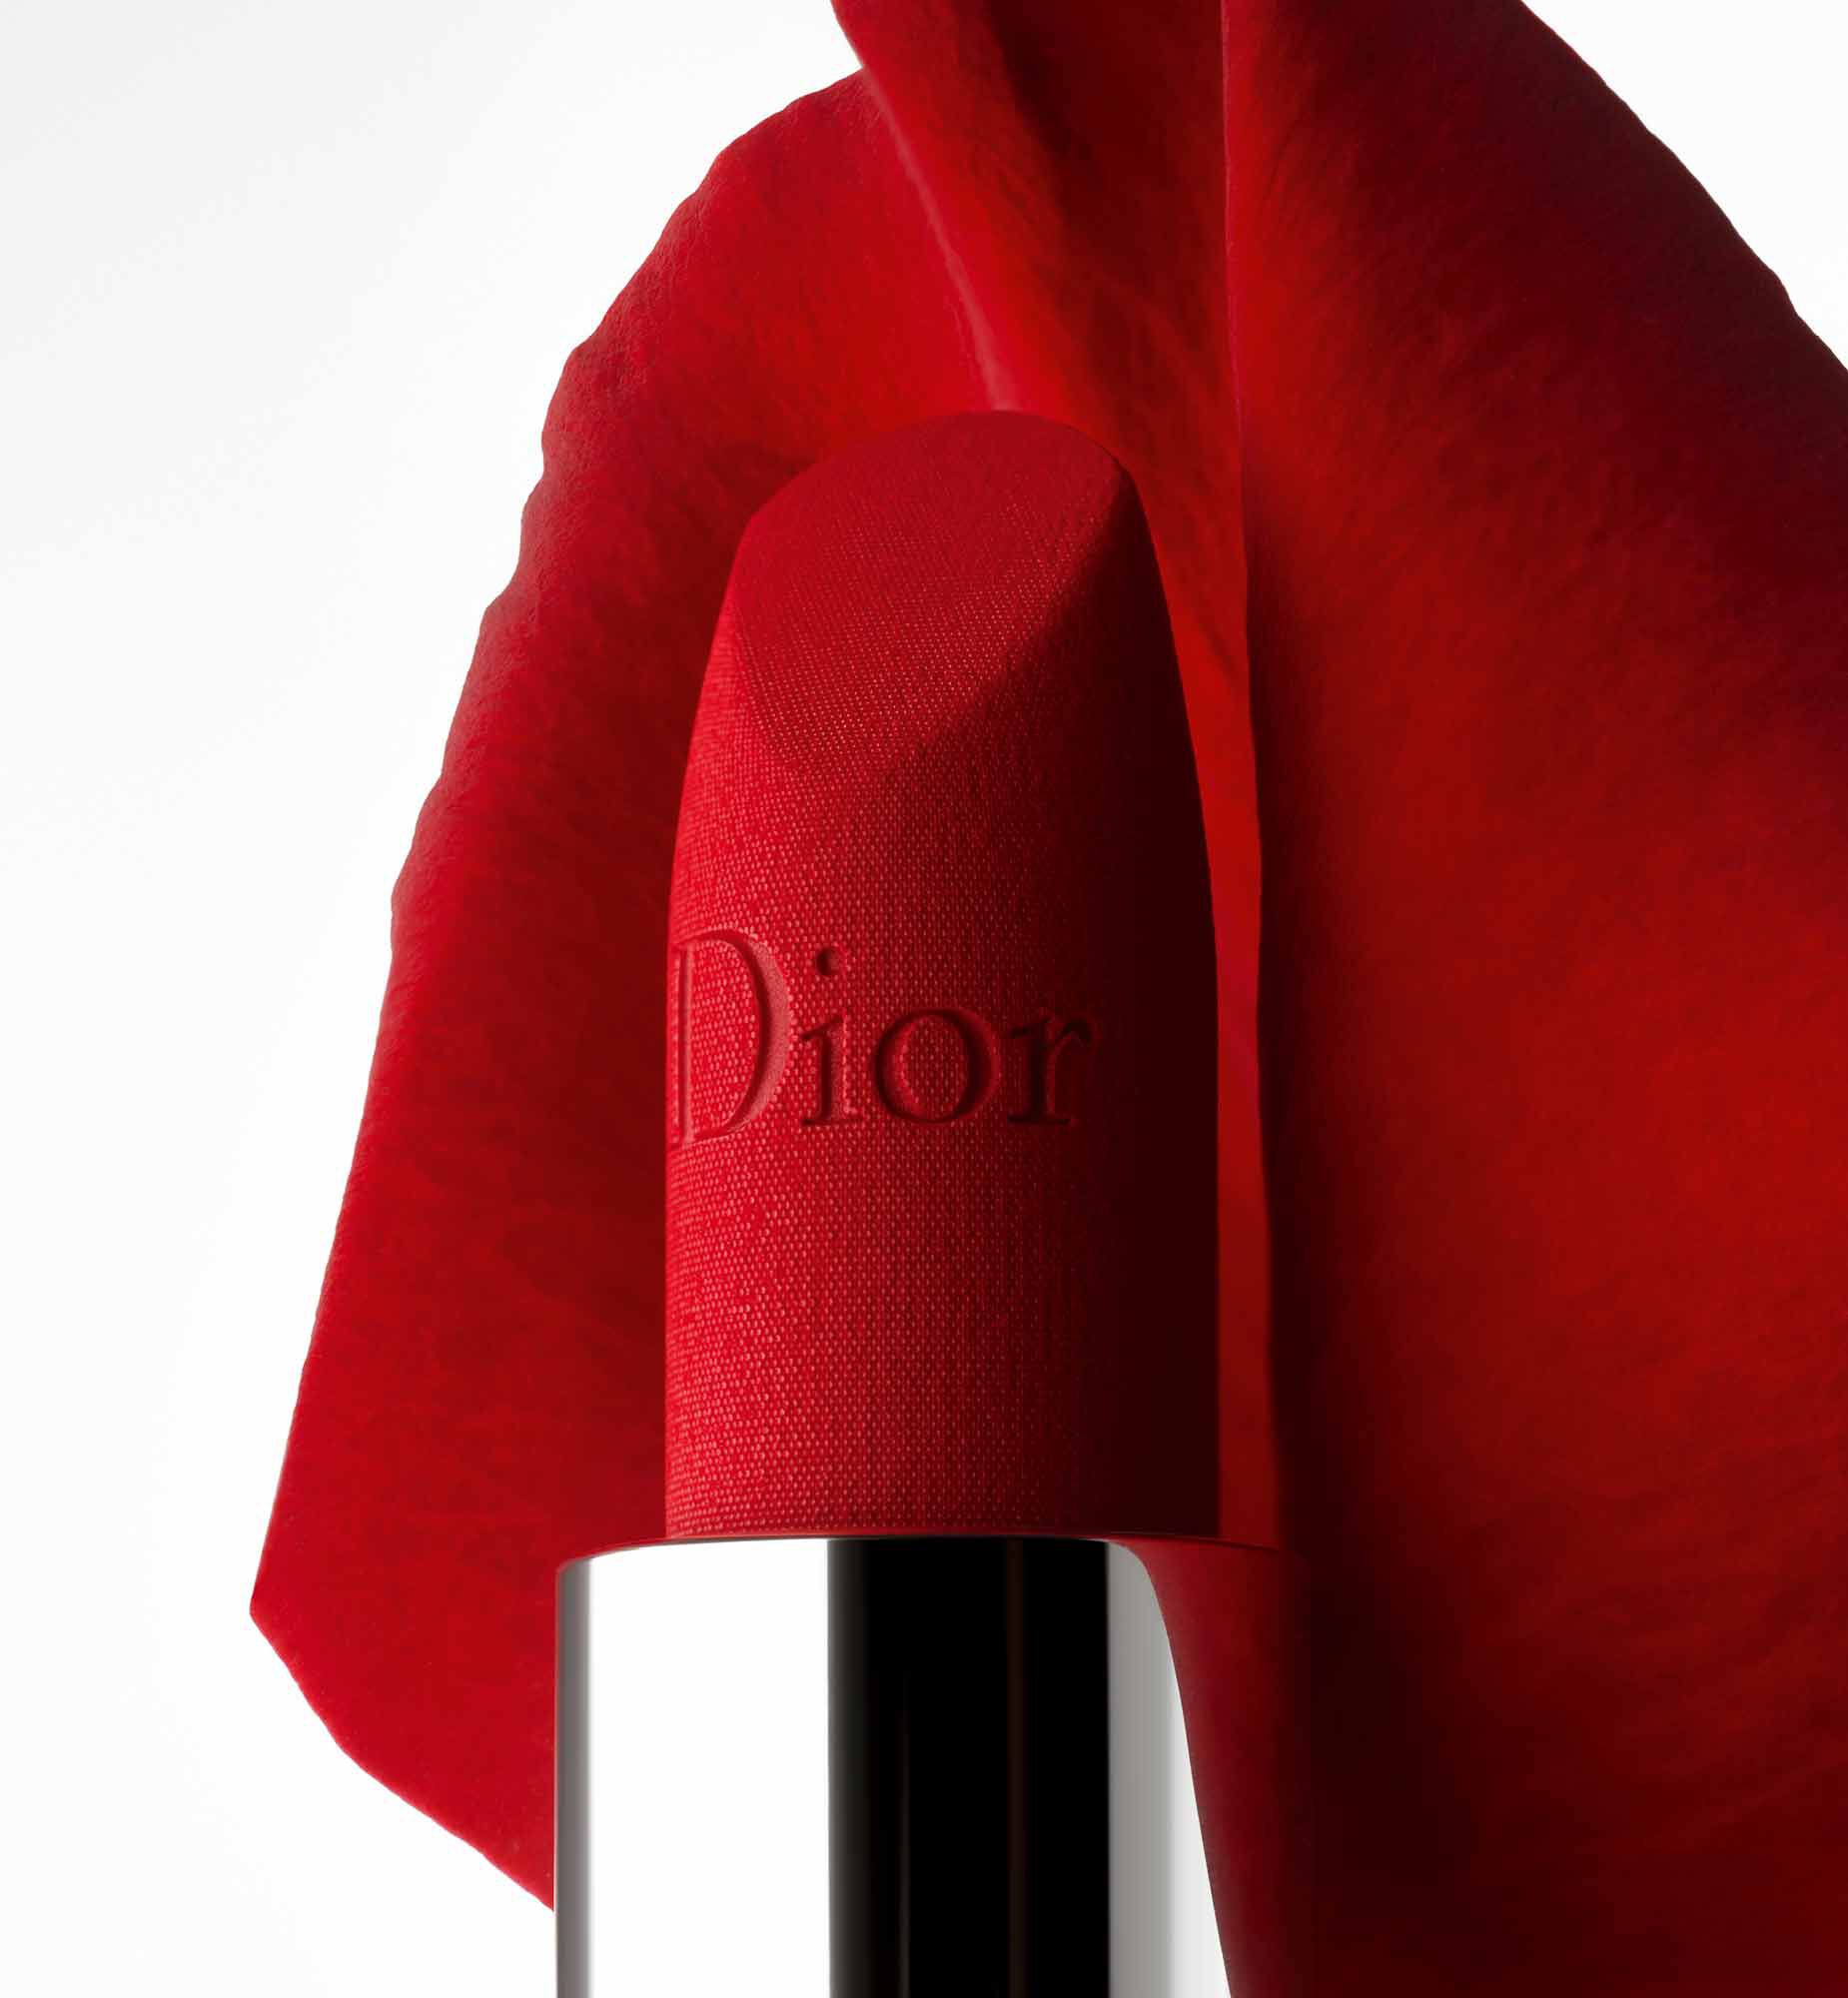 Son thỏi lì mini Rough Dior Couture Colour Lipstick 999 Velvet 15g  Kute  Shop